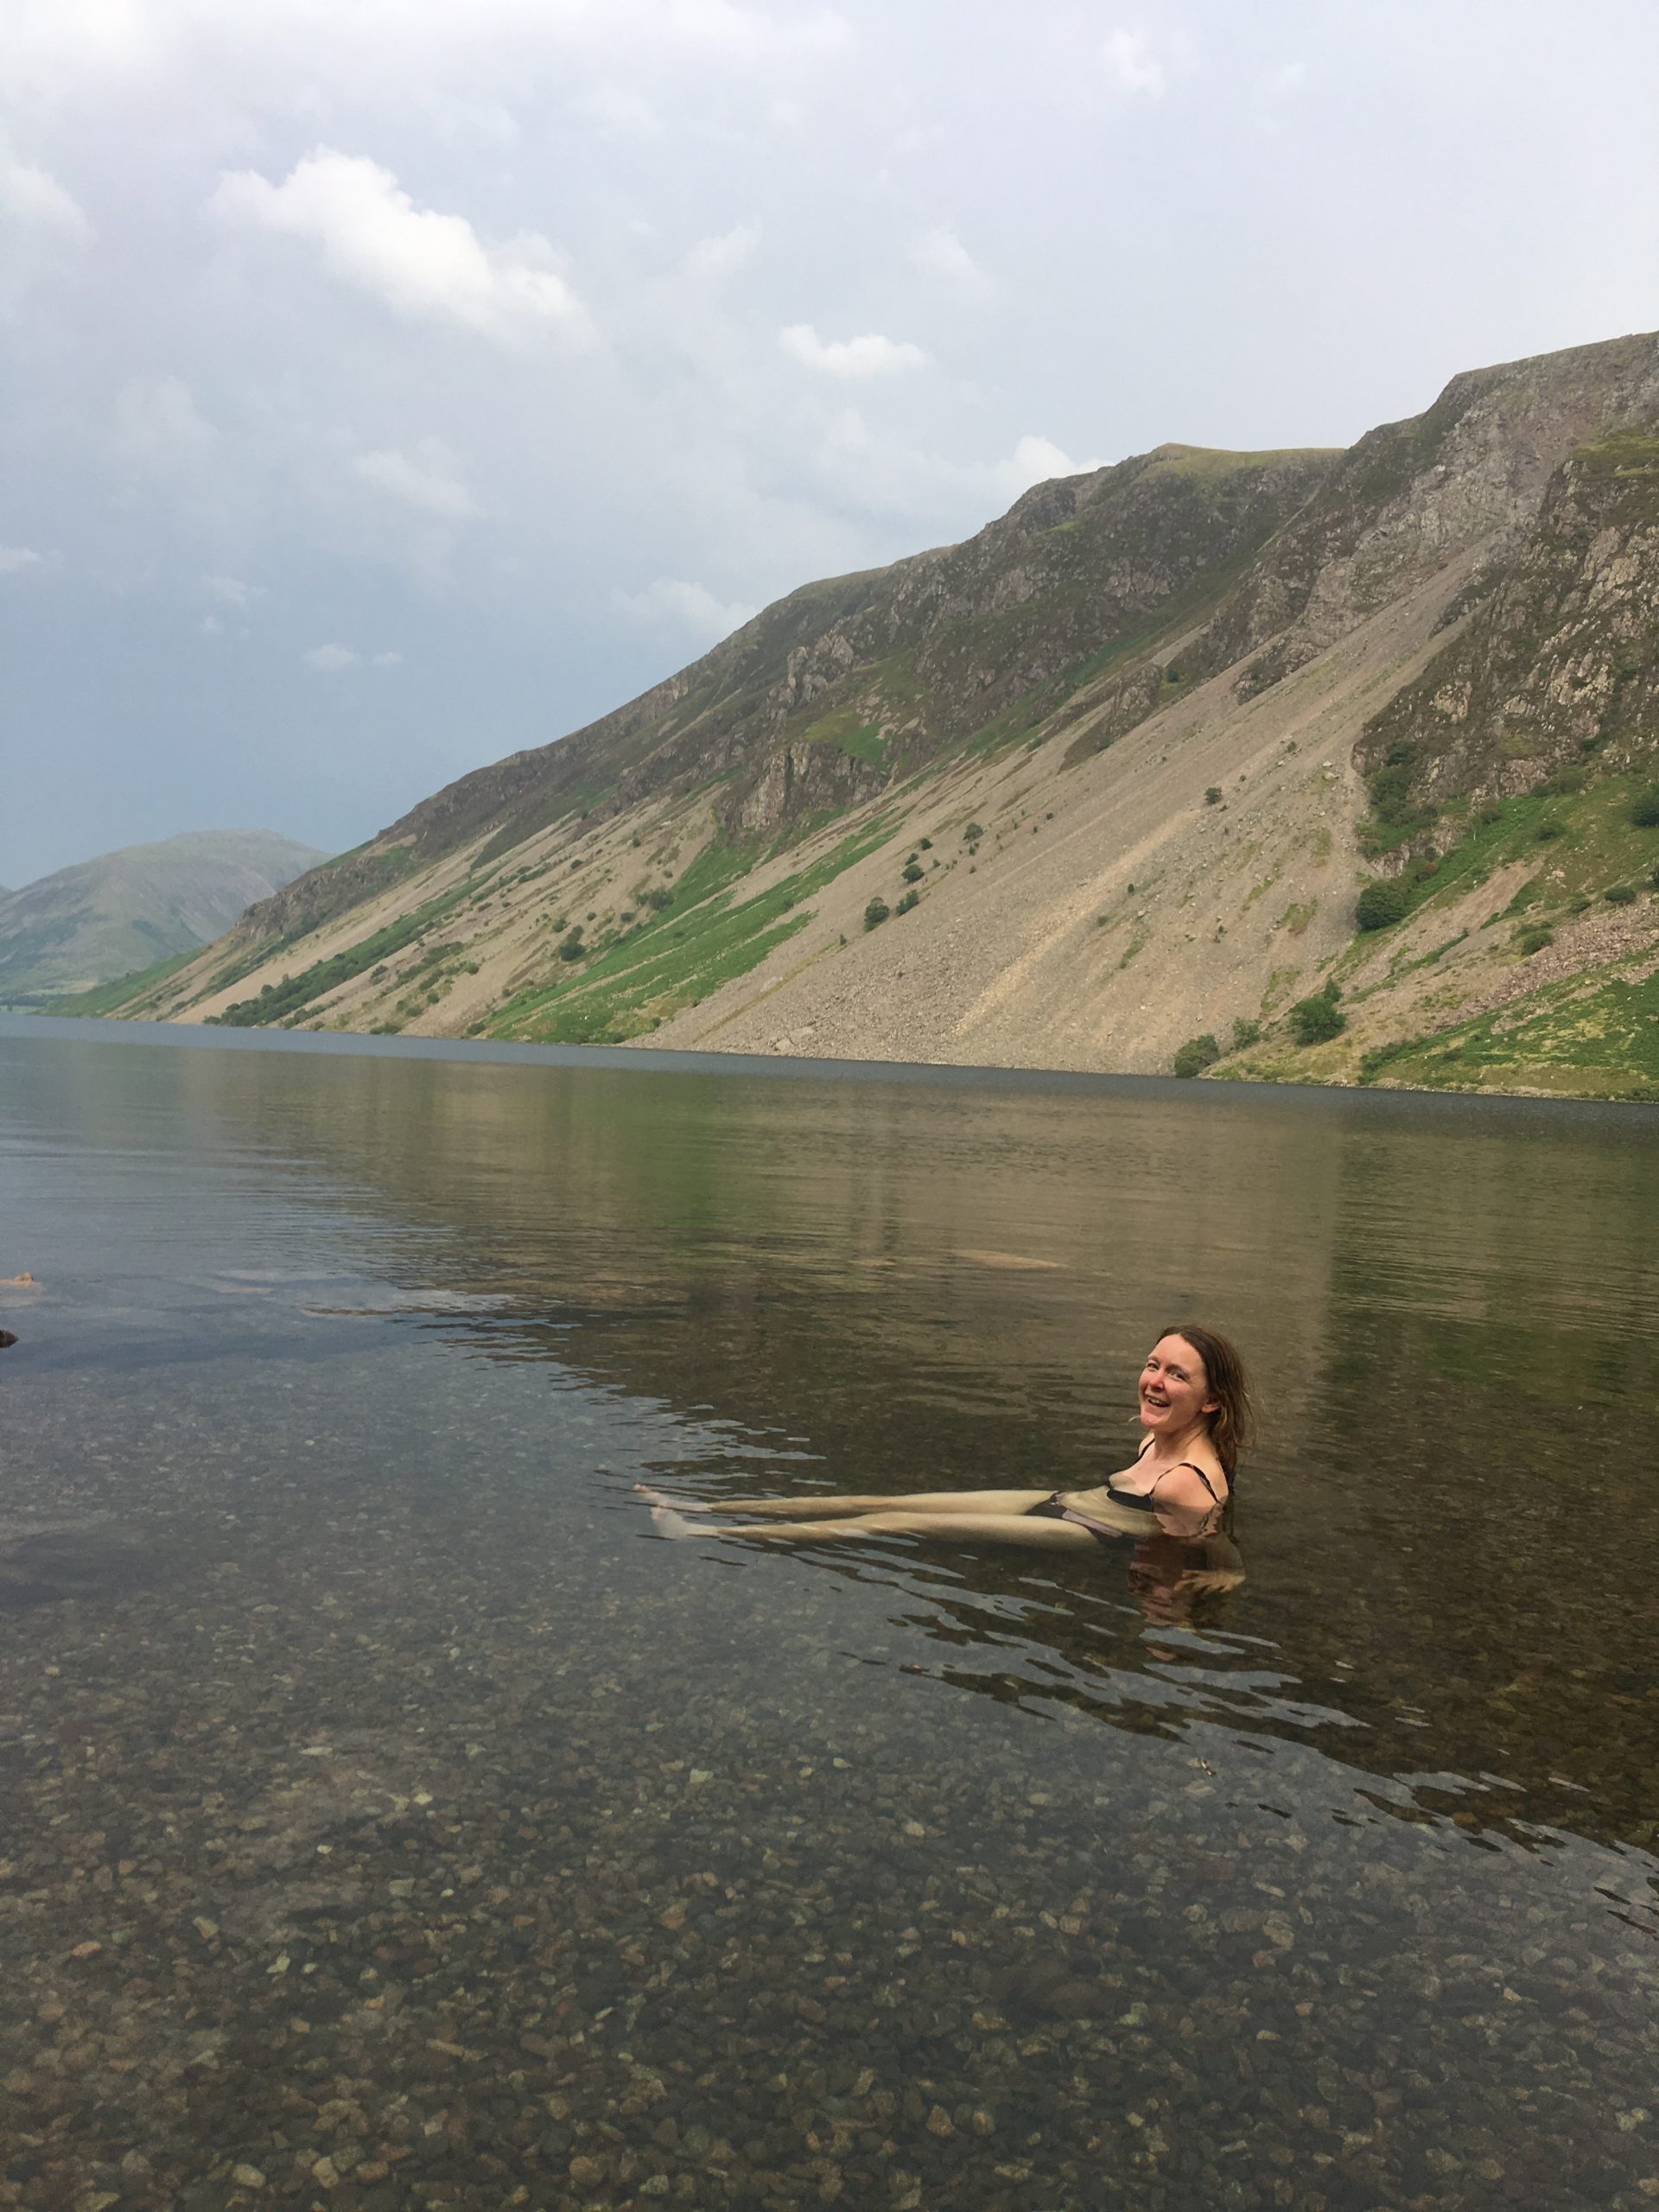 divya sundararaman recommends skinny dipping in lake pic